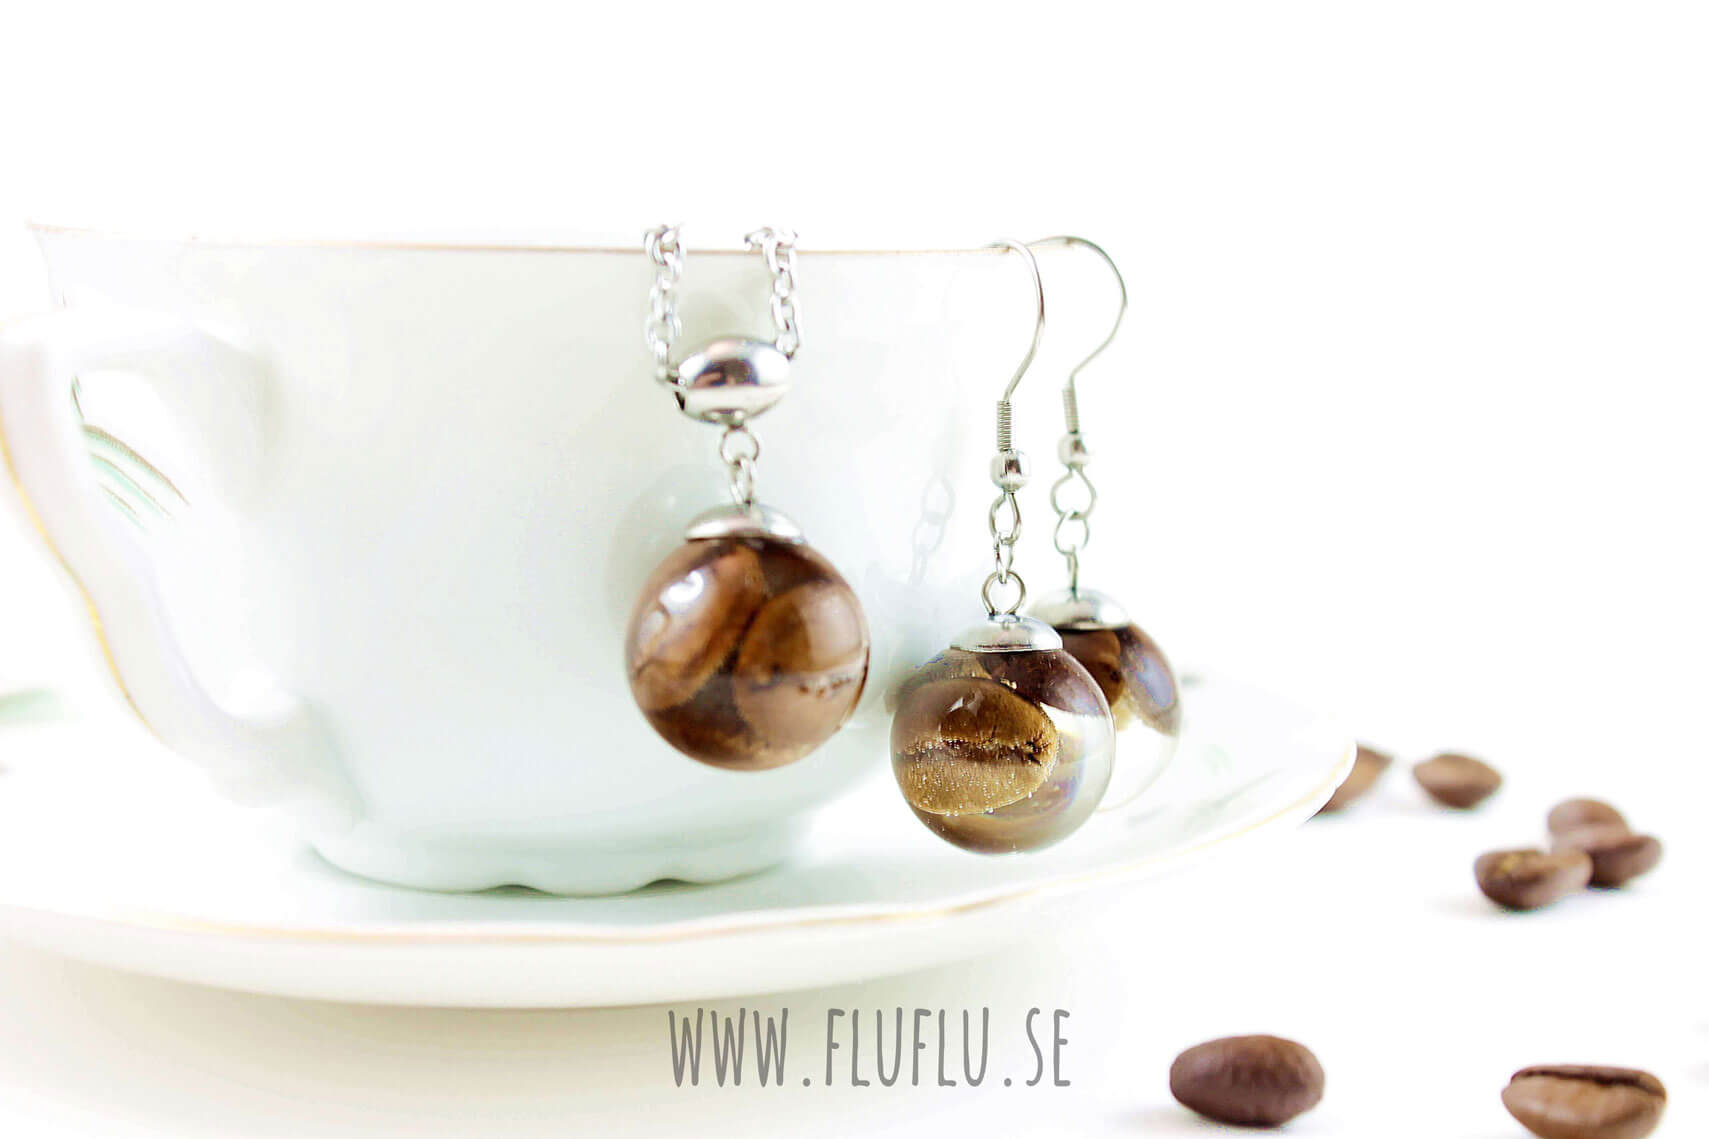 Kaffepärla - Fluflu Handgjorda Smycken & Design